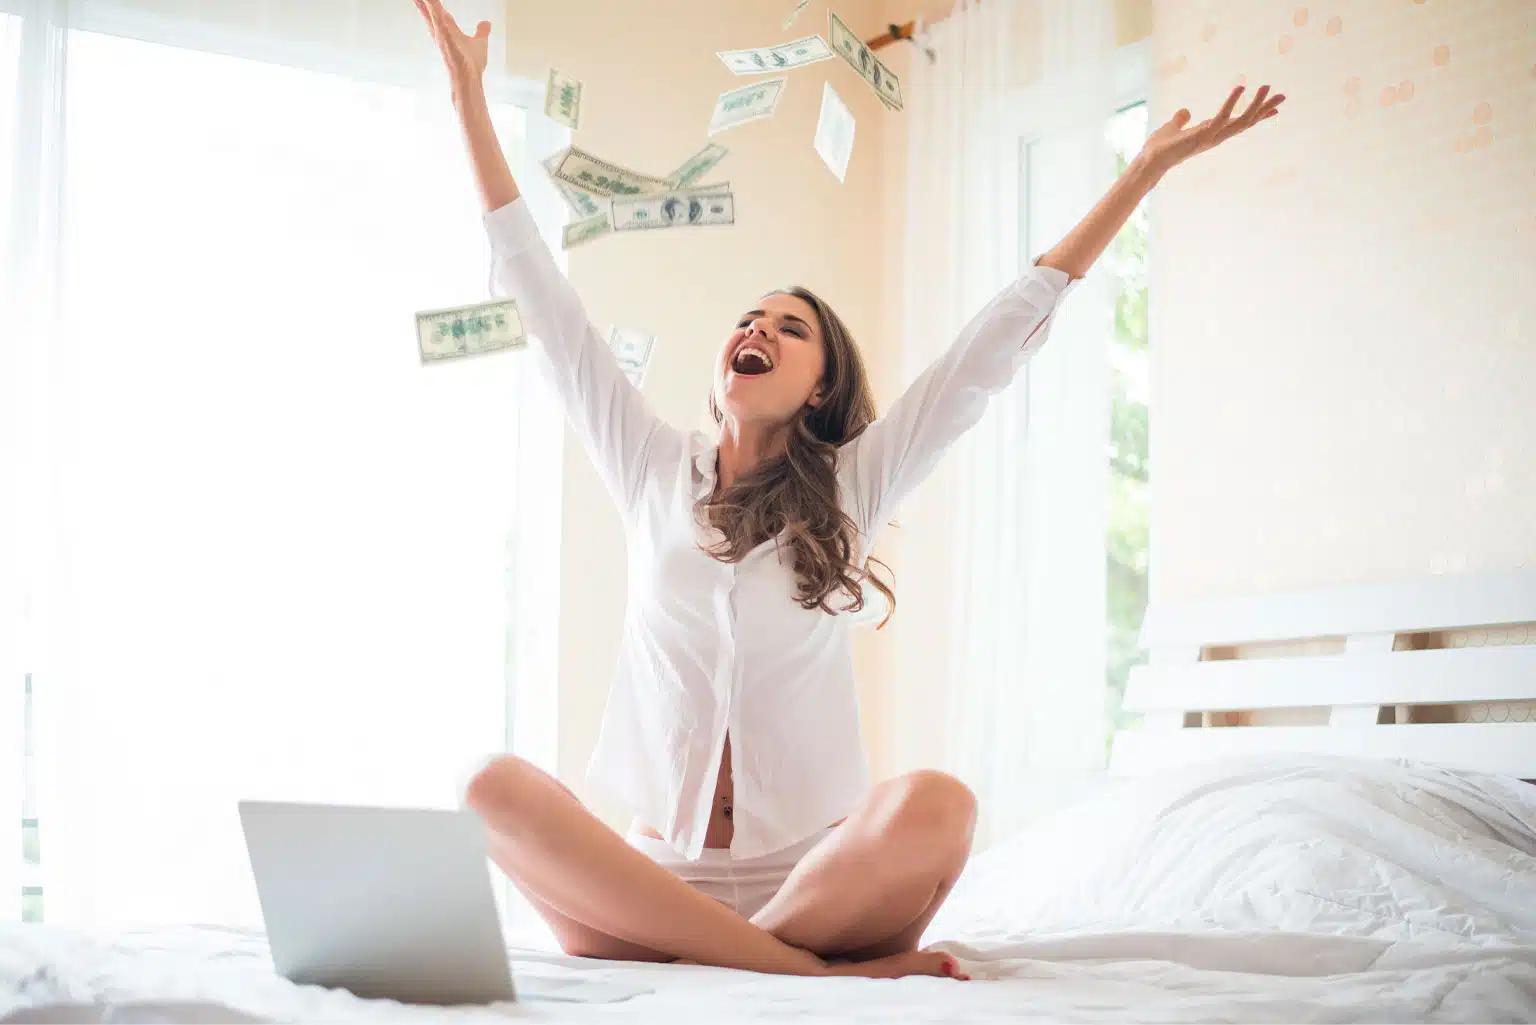 Quanto Dinheiro Precisa Para Ser Feliz? Harvard Responde